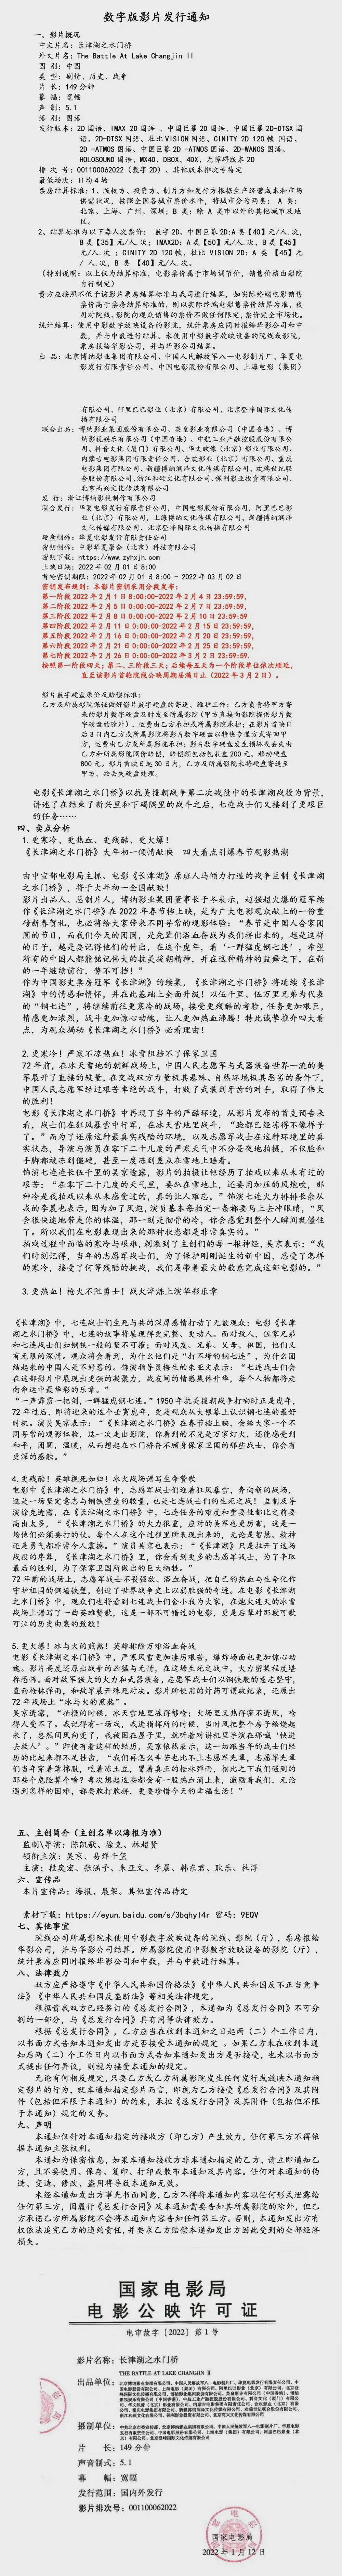 电影《长津湖之水门桥》发行通知公布：片长共149分钟 有多个发行版本